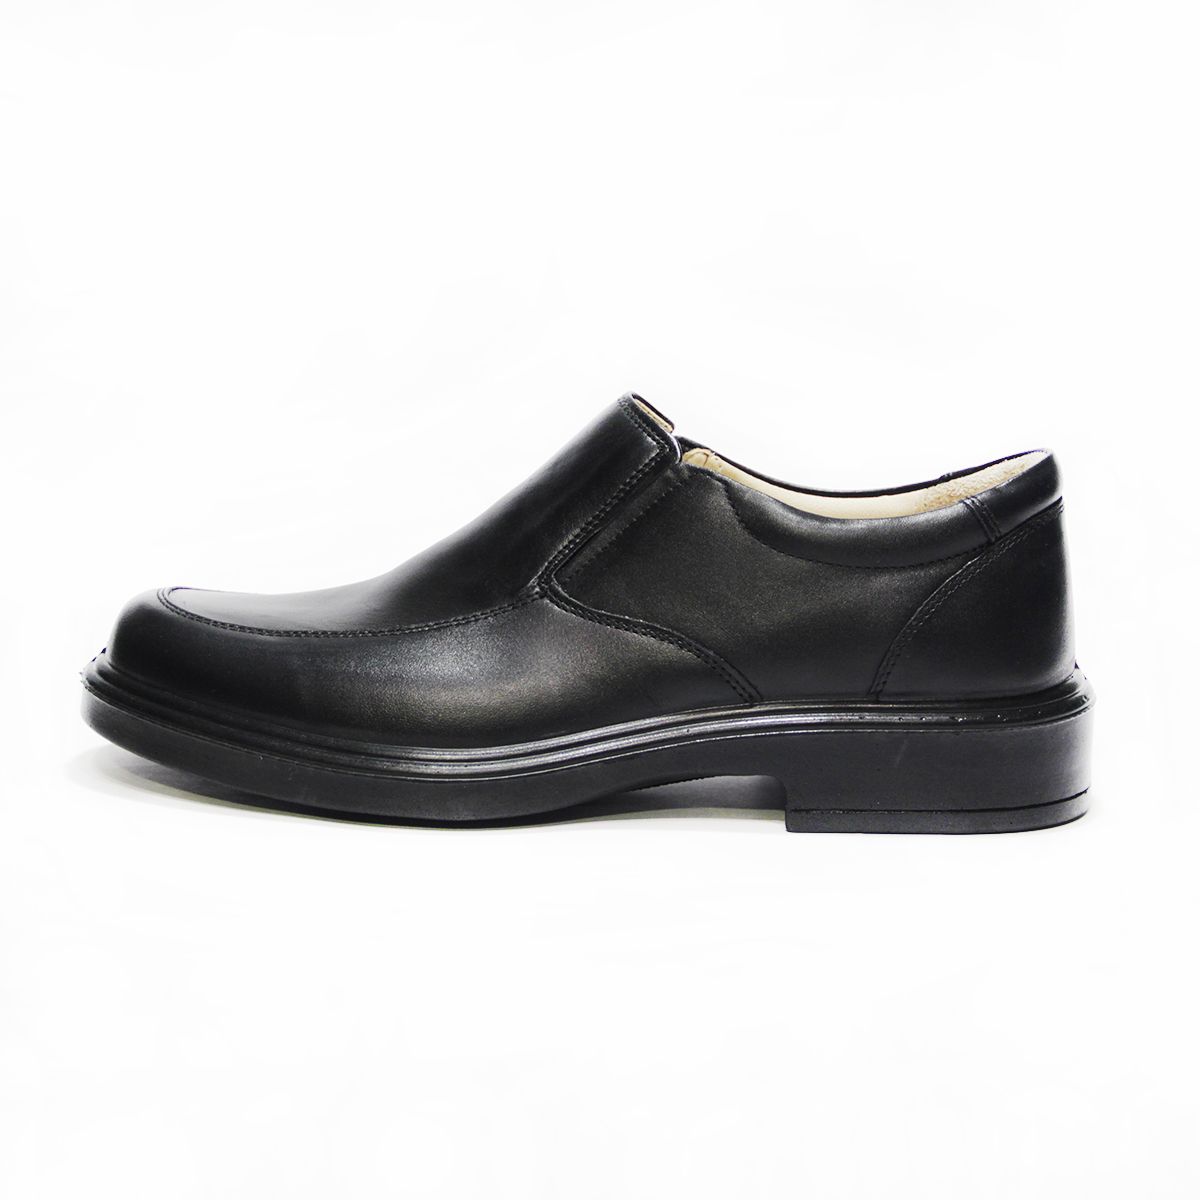 کفش مردانه فرزین کد FKM 0023 رنگ مشکی -  - 1